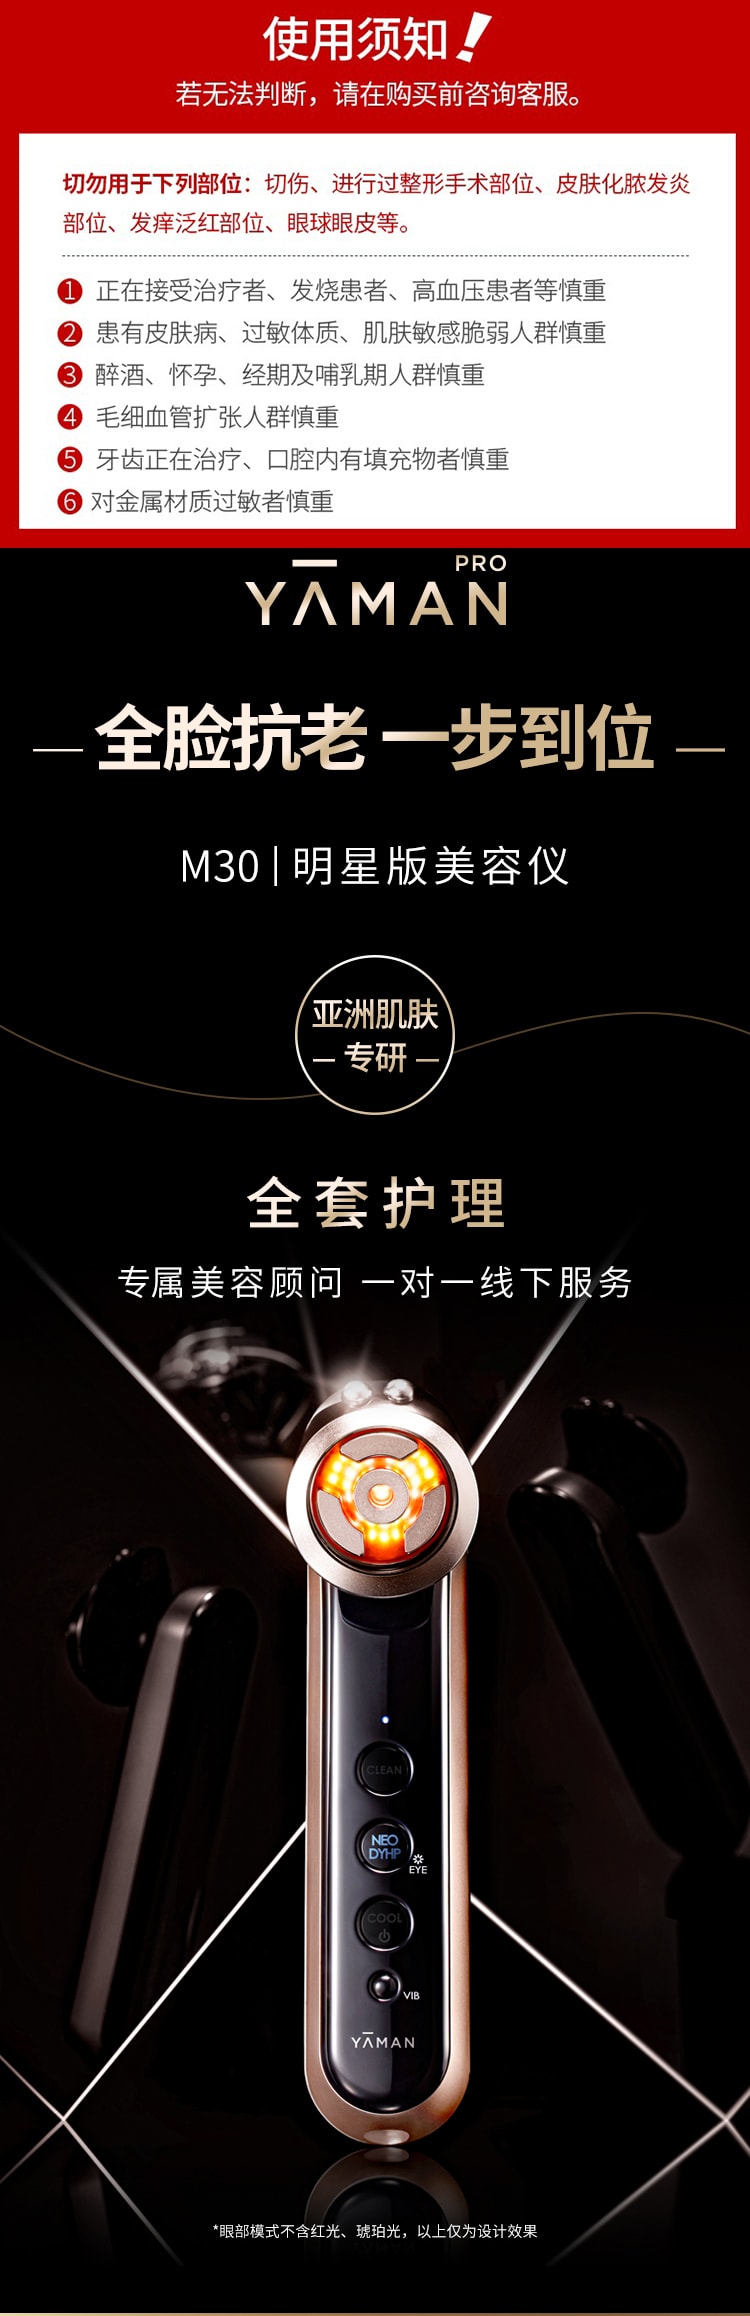 【日本直郵】YAMAN 雅萌最新款 Max M30 3M明星版 赫茲射頻美容儀 1台 (M21-1升級款)